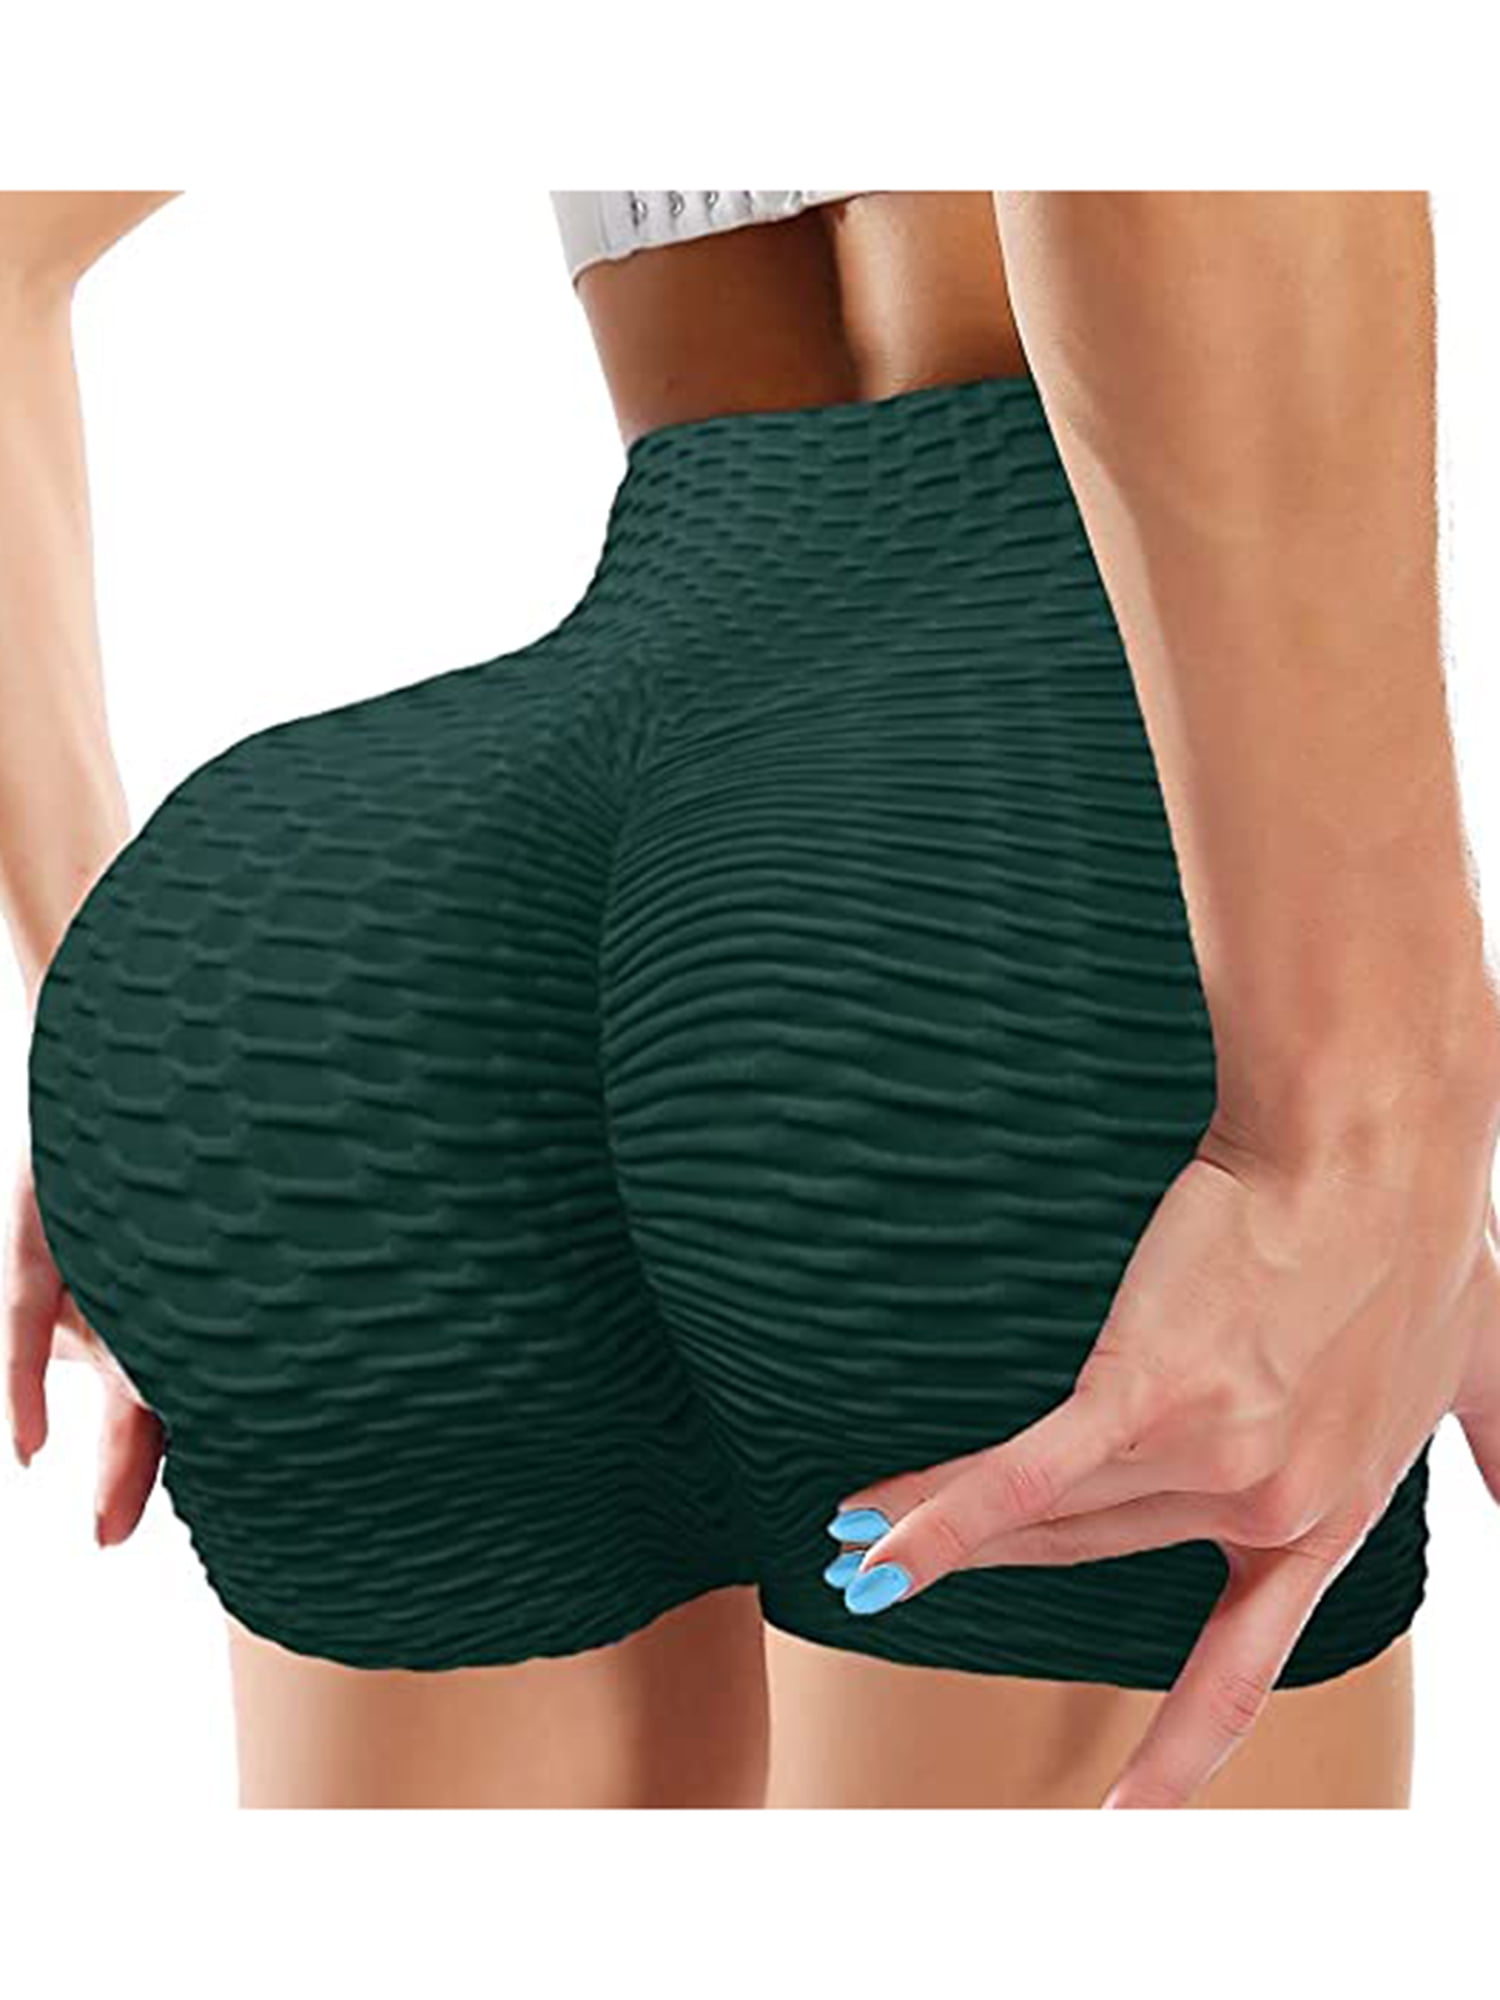 Scrunch Butt Shorts for Women High Waist Booty Butt Lifting Shorts